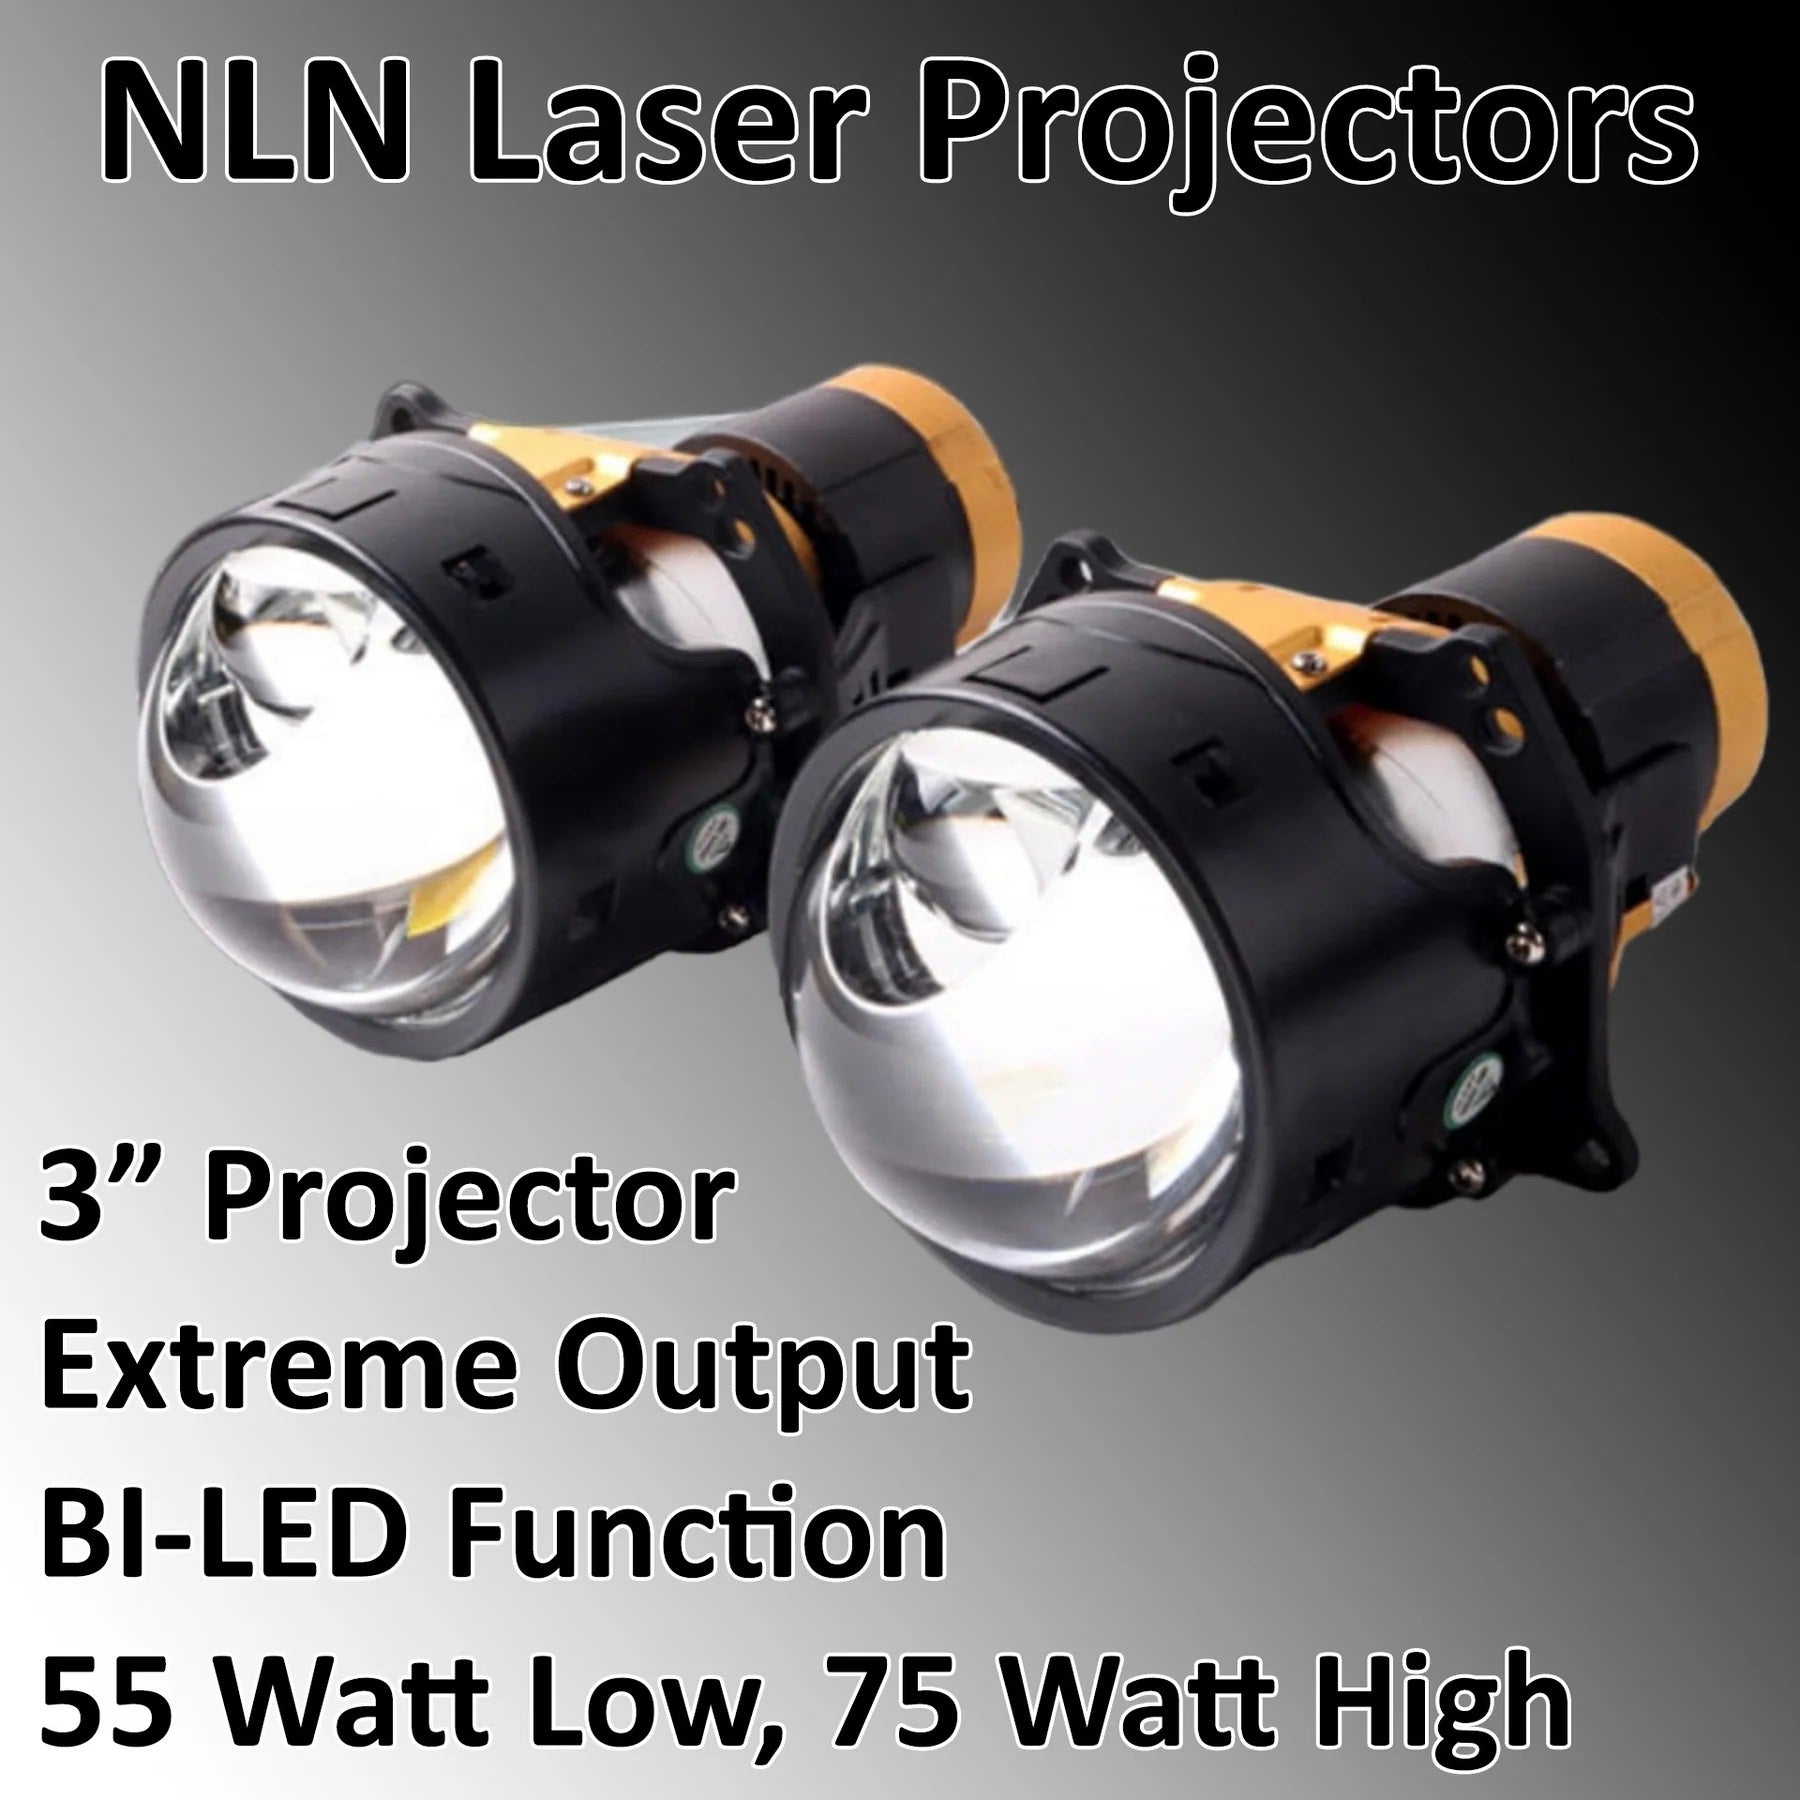 Projectors - Next Level Neo